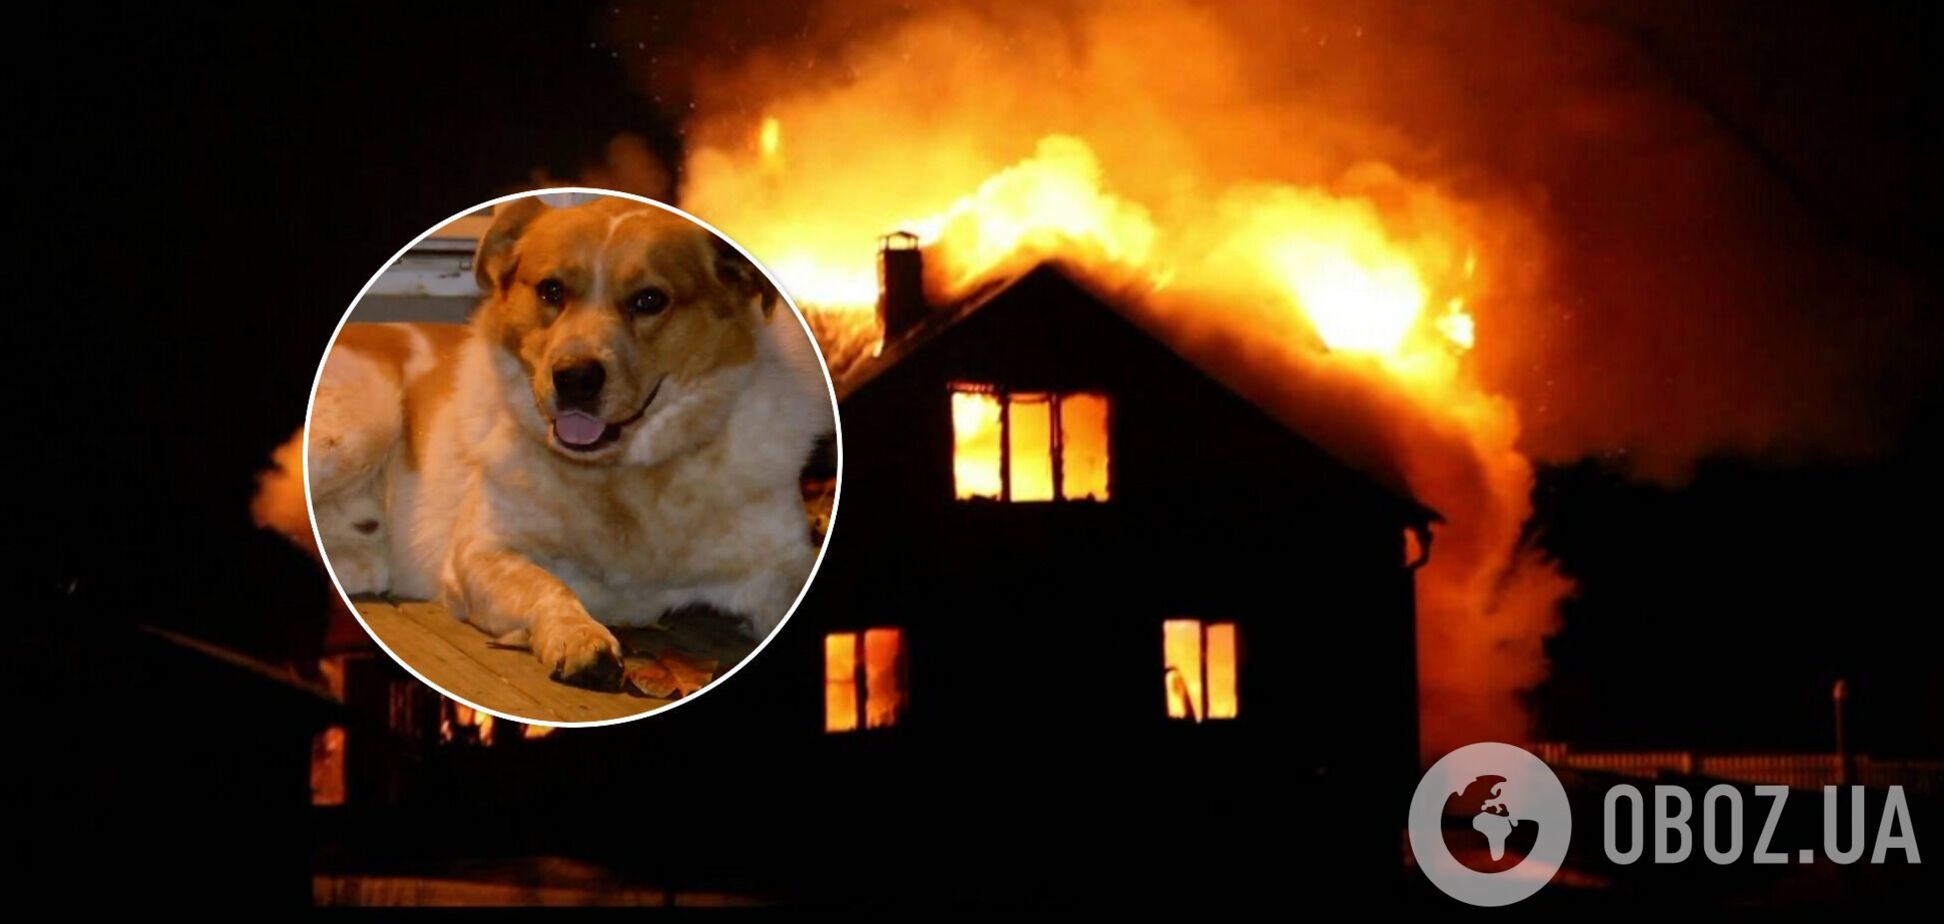 В США пес спас семью с детьми от пожара: о 'герое' рассказали в соцсетях. Фото